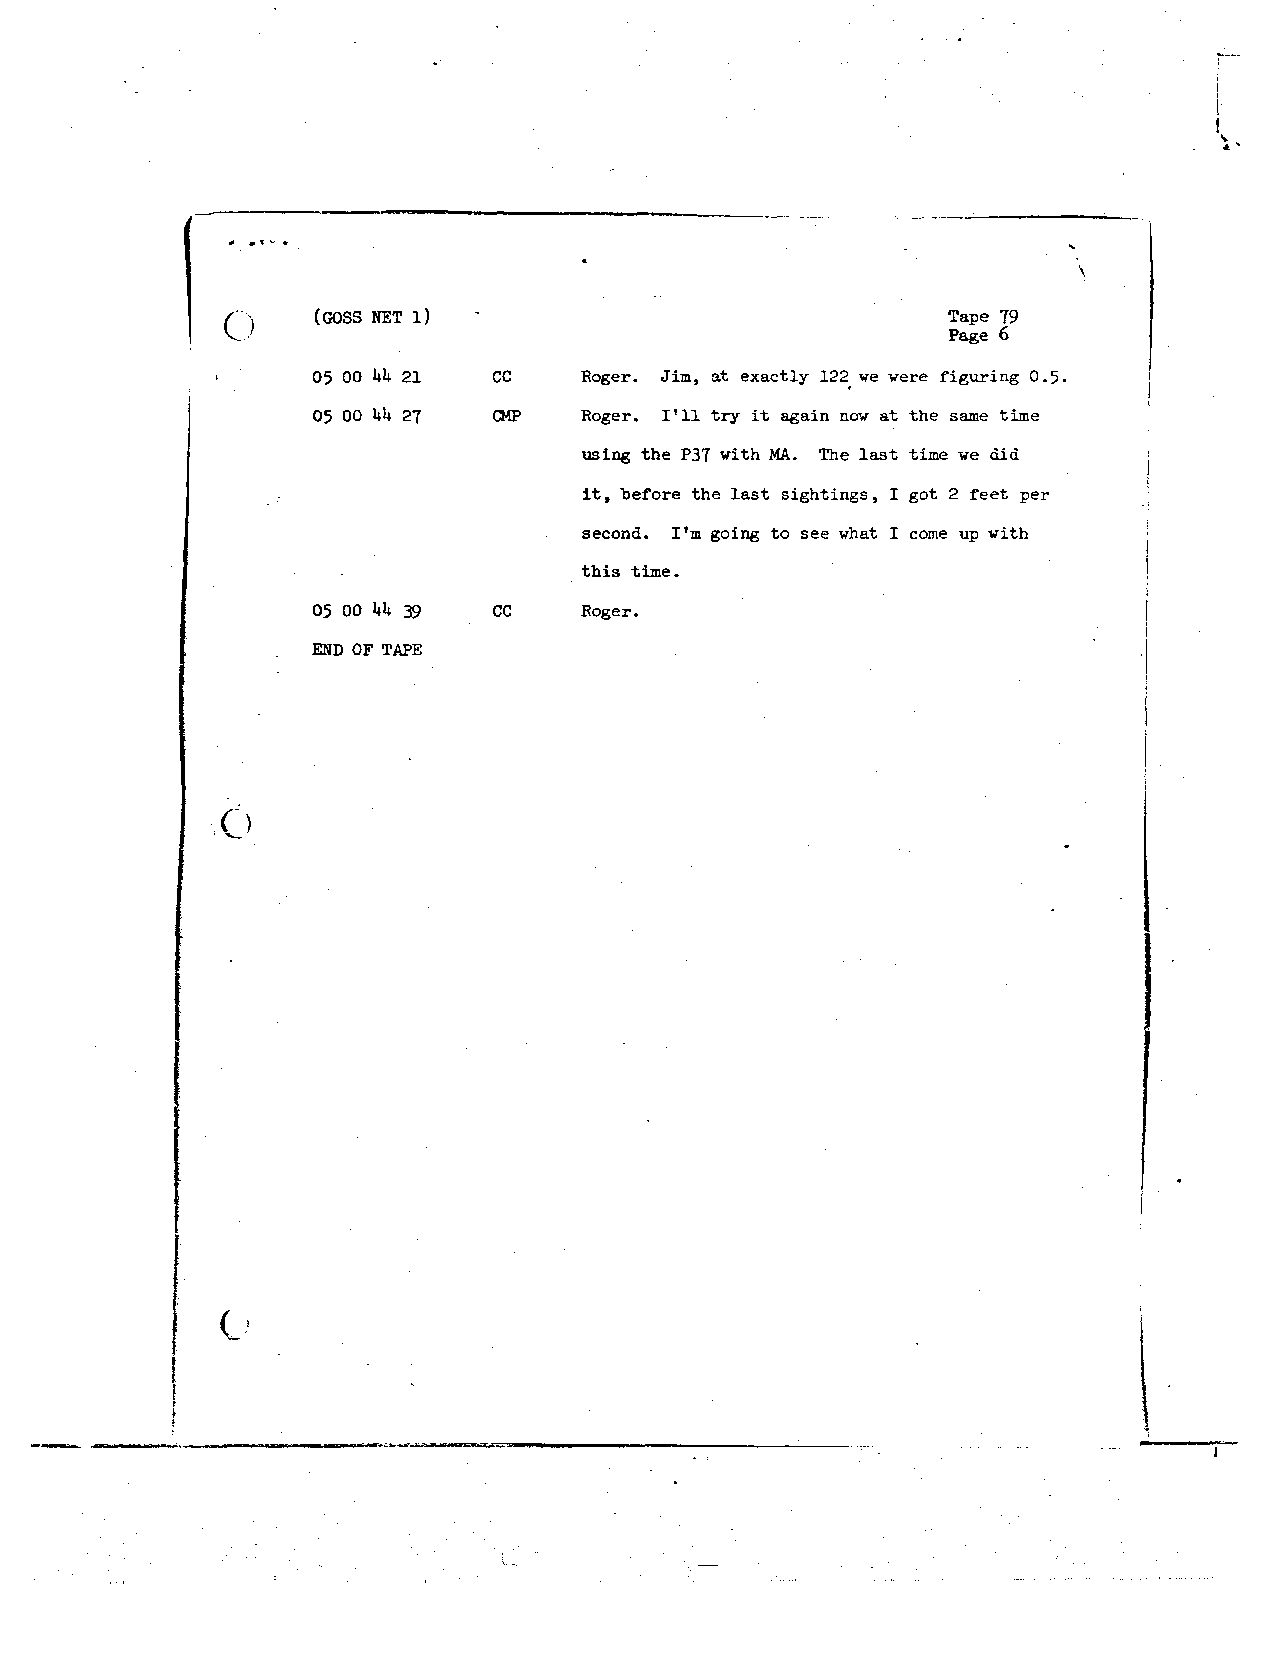 Page 657 of Apollo 8’s original transcript